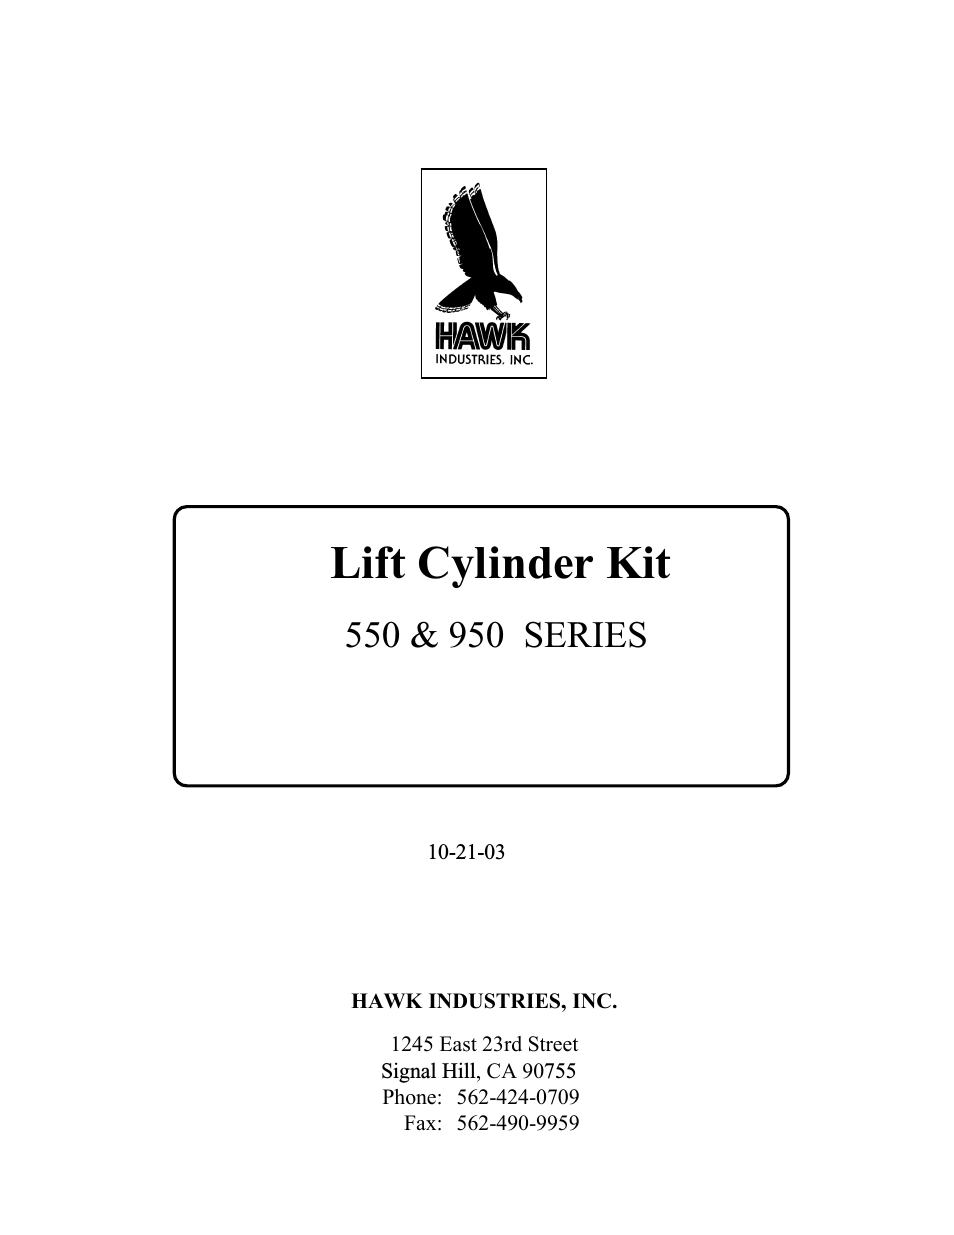 Spinmaster Lift Cylinder Kit Option